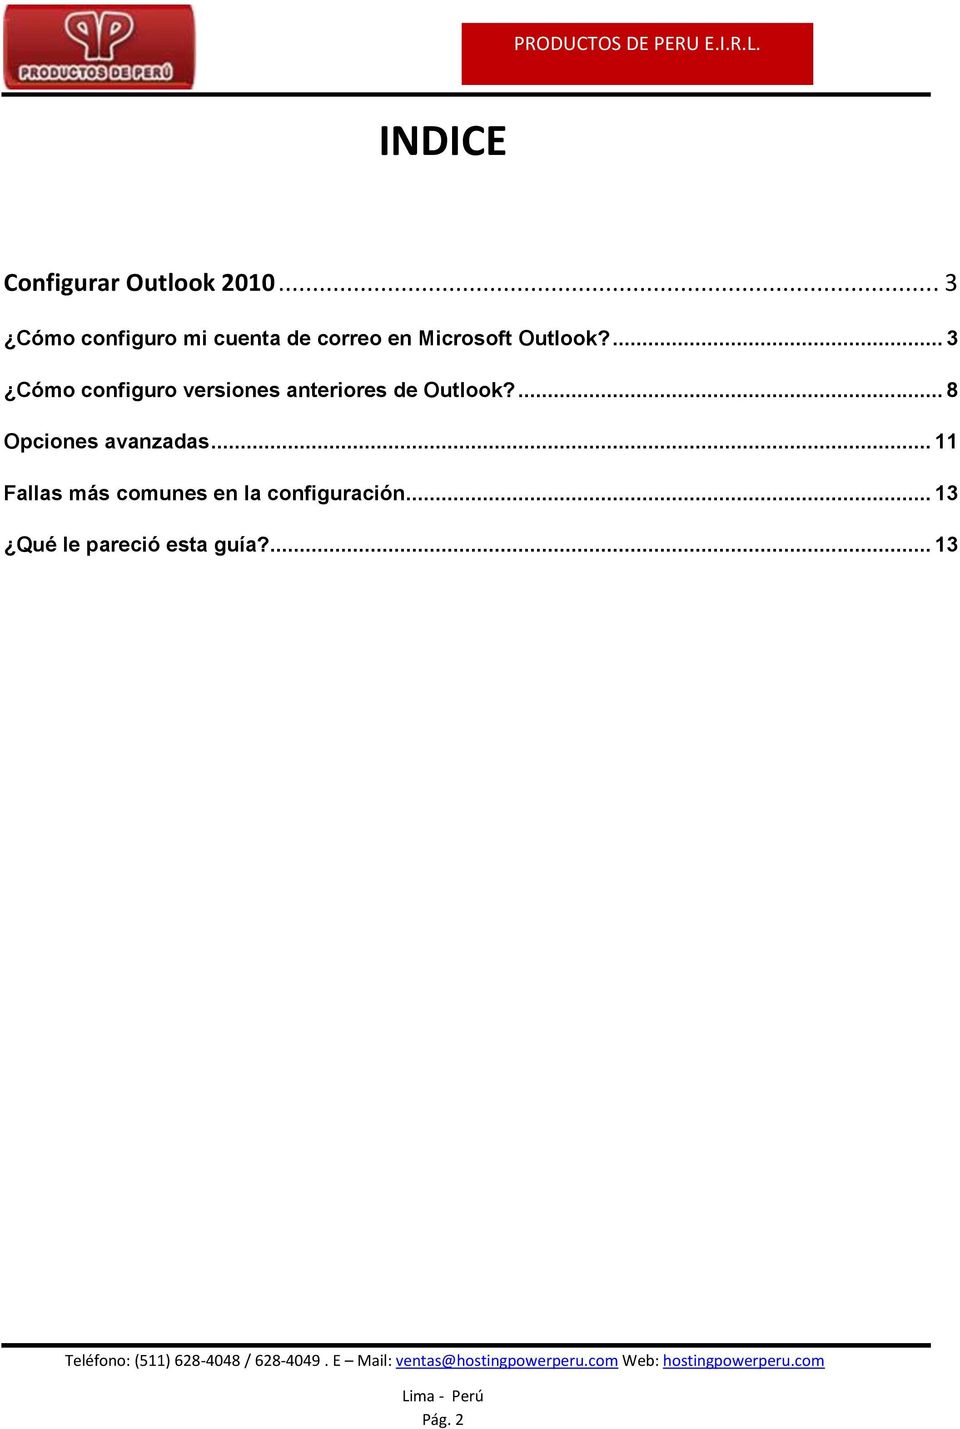 ... 3 Cómo configuro versiones anteriores de Outlook?